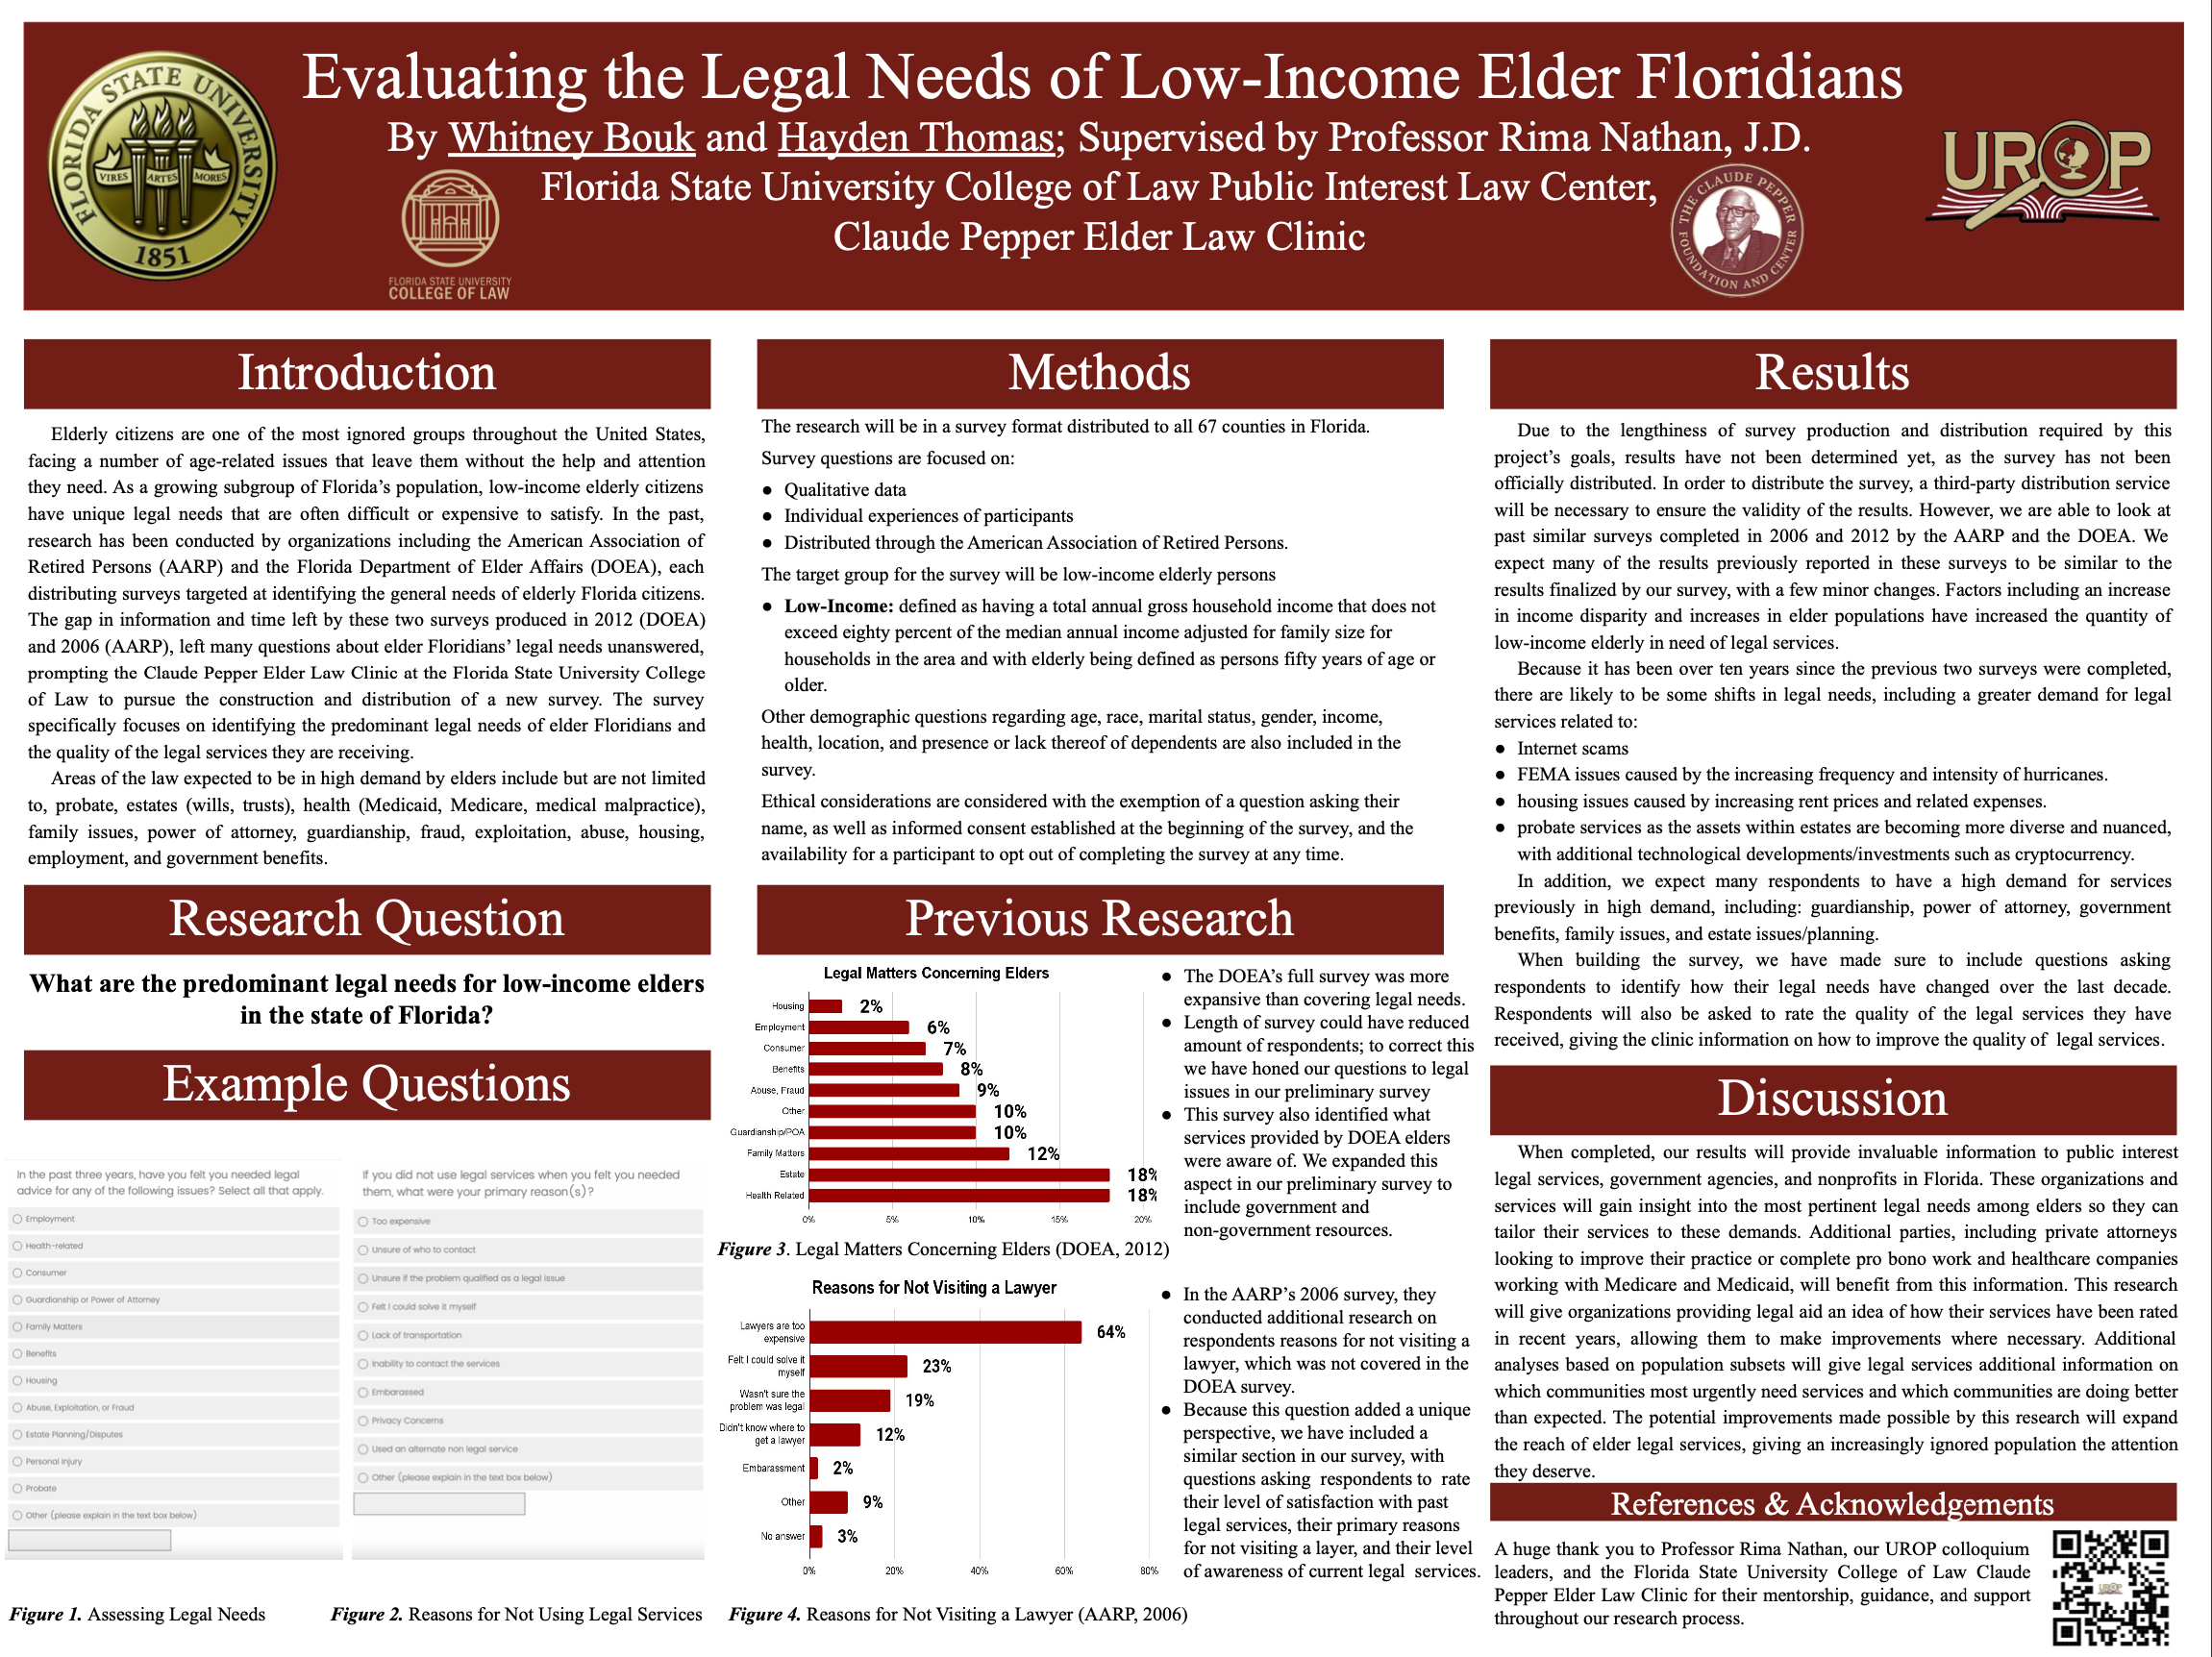 Legal Needs of Elder Floridians.png